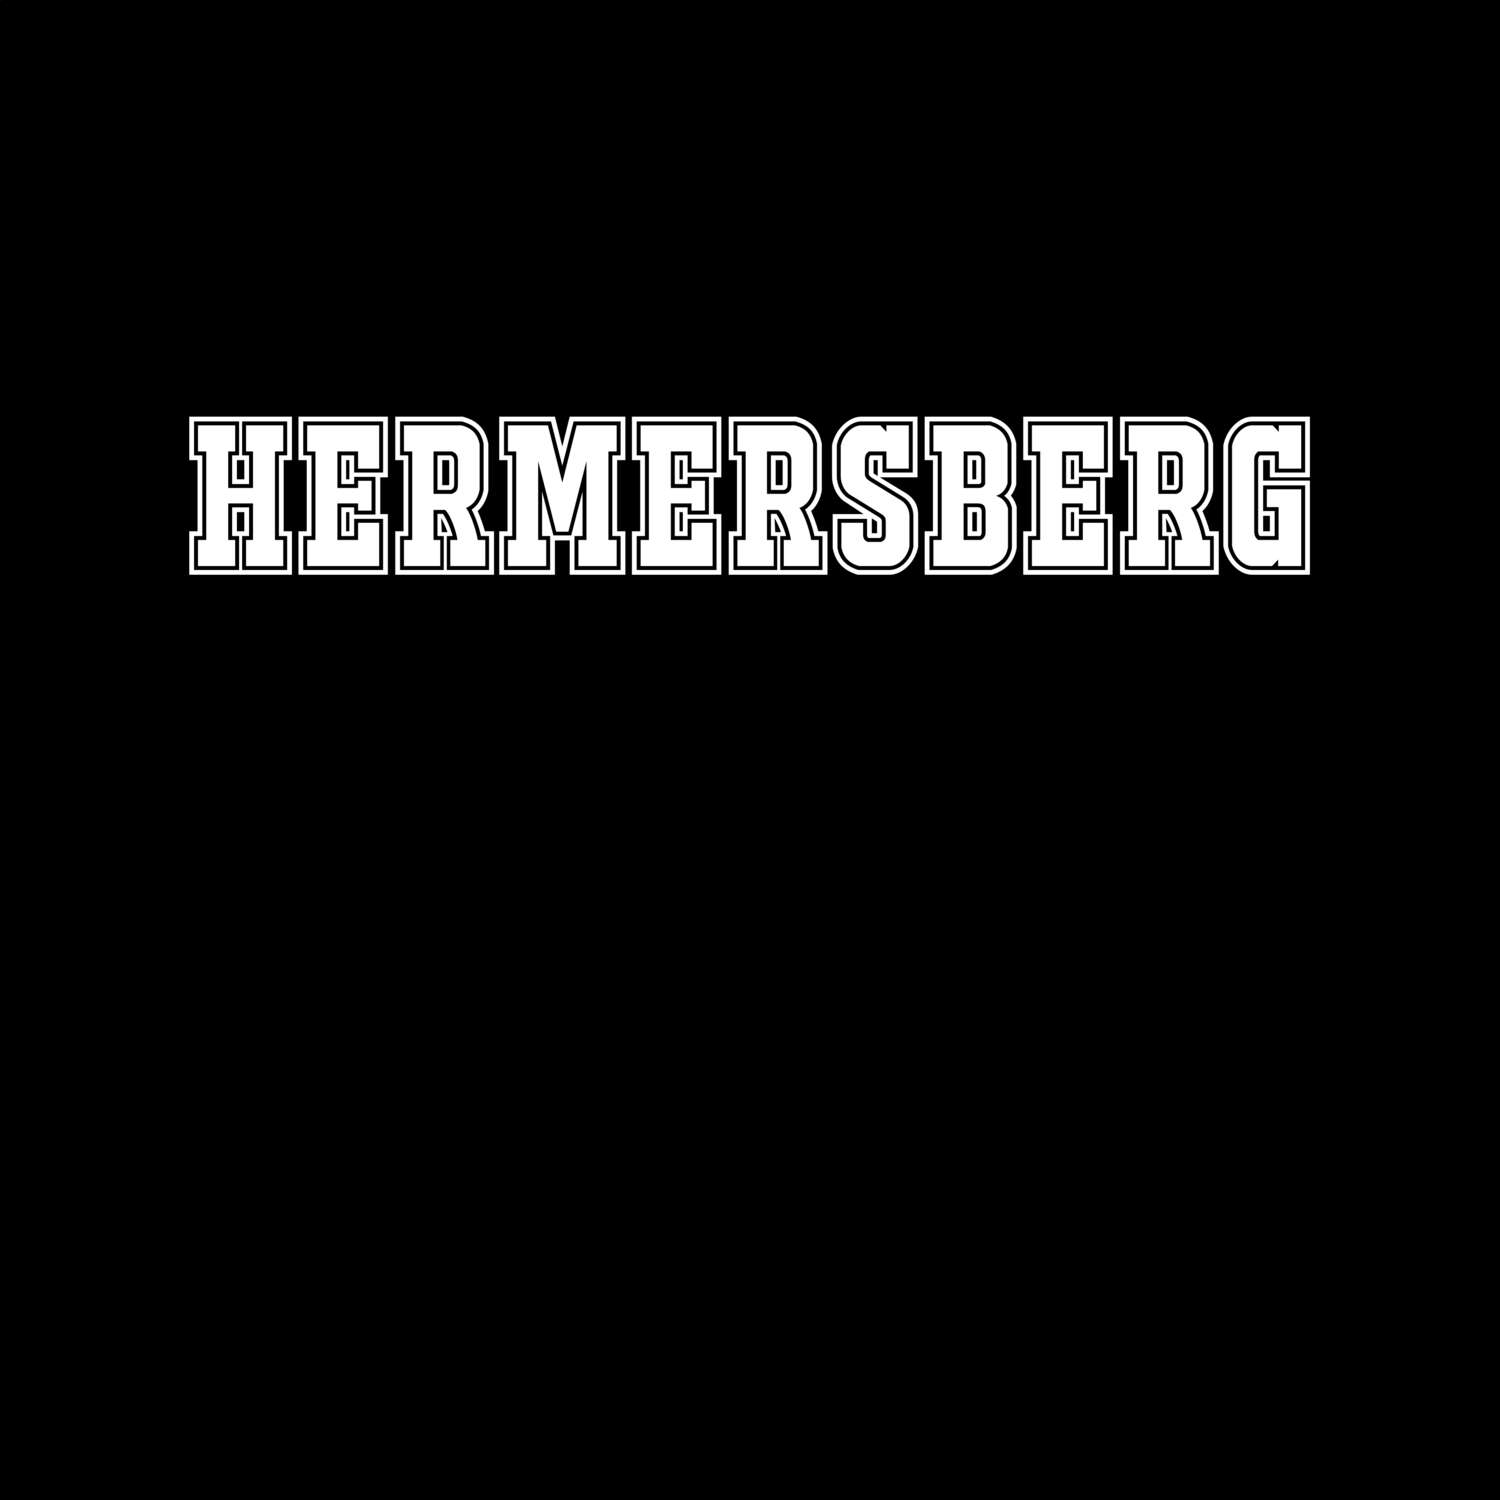 Hermersberg T-Shirt »Classic«